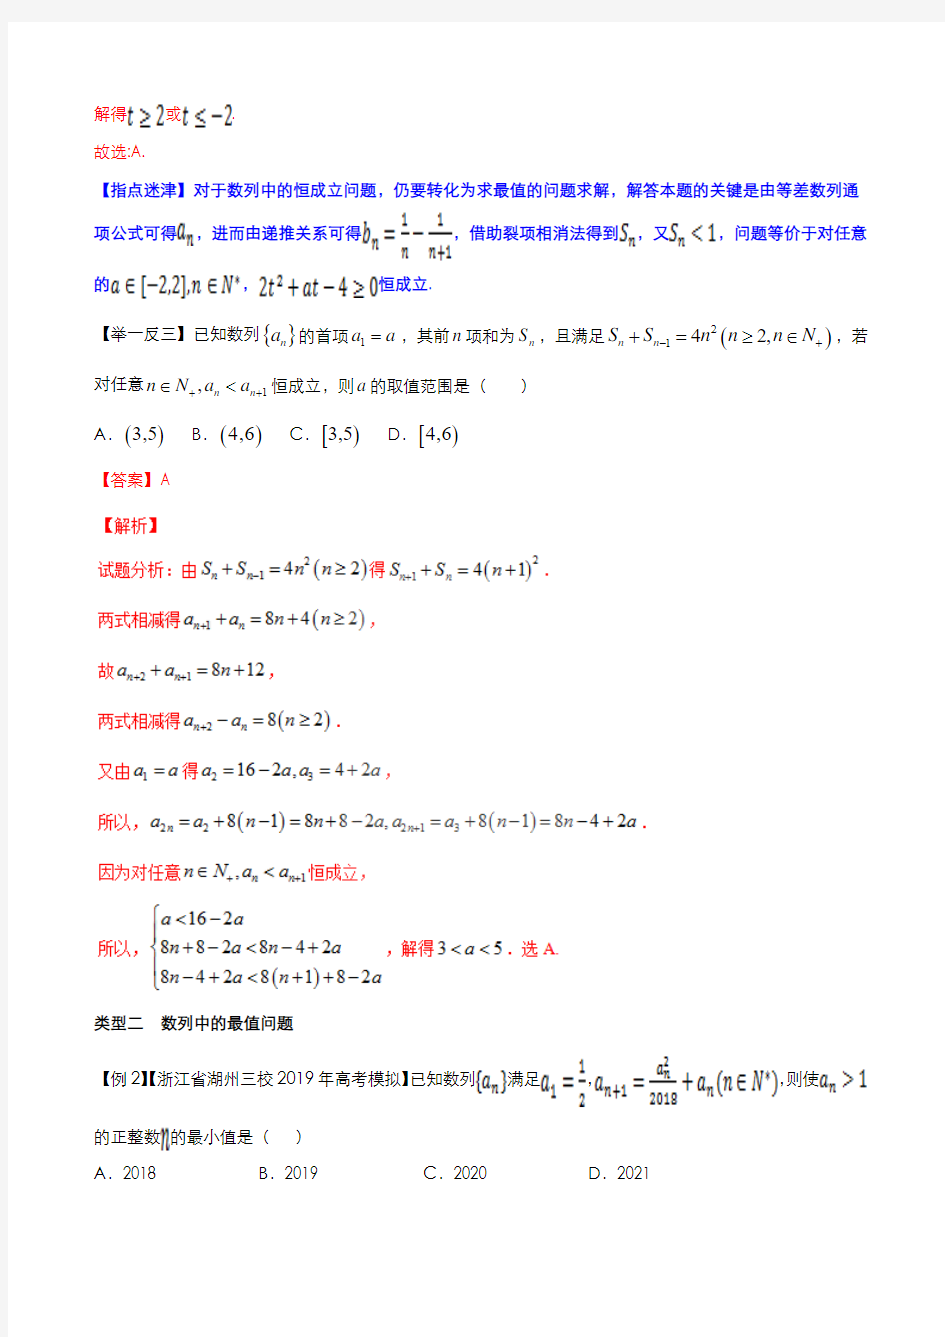 专题3.3 数列与函数、不等式相结合问题(解析版)